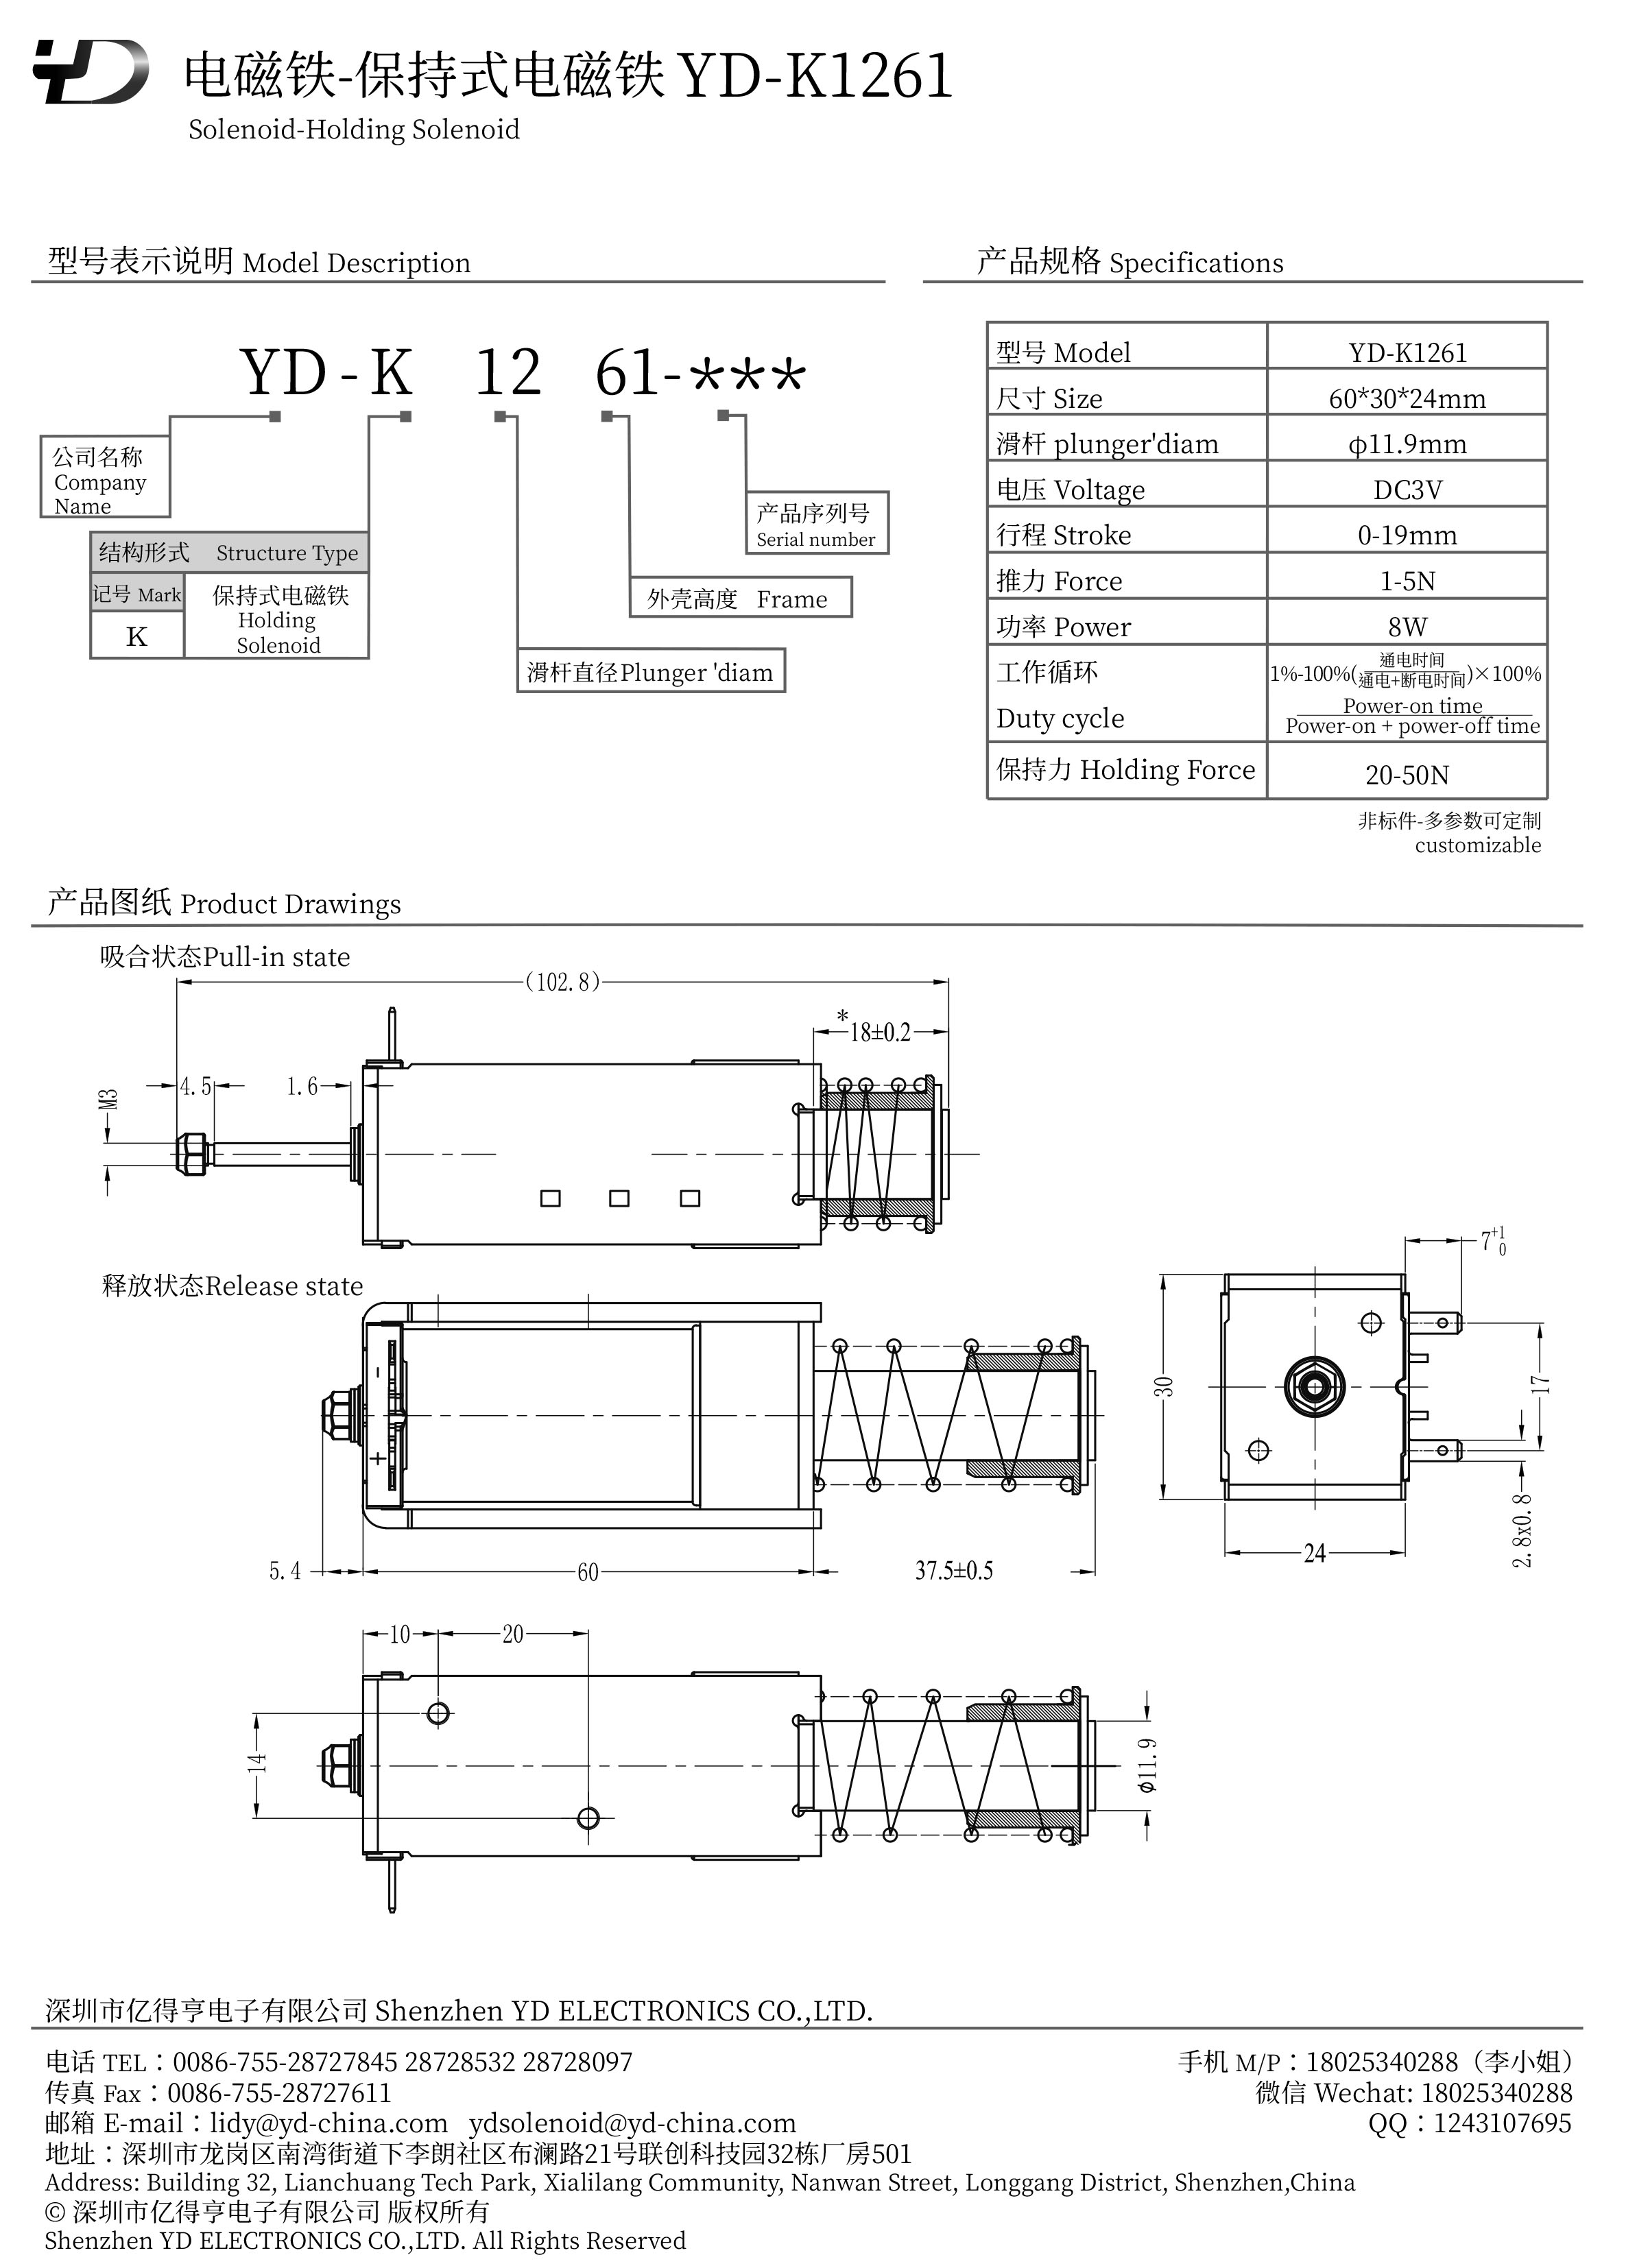 YD-K1261-PDF.jpg